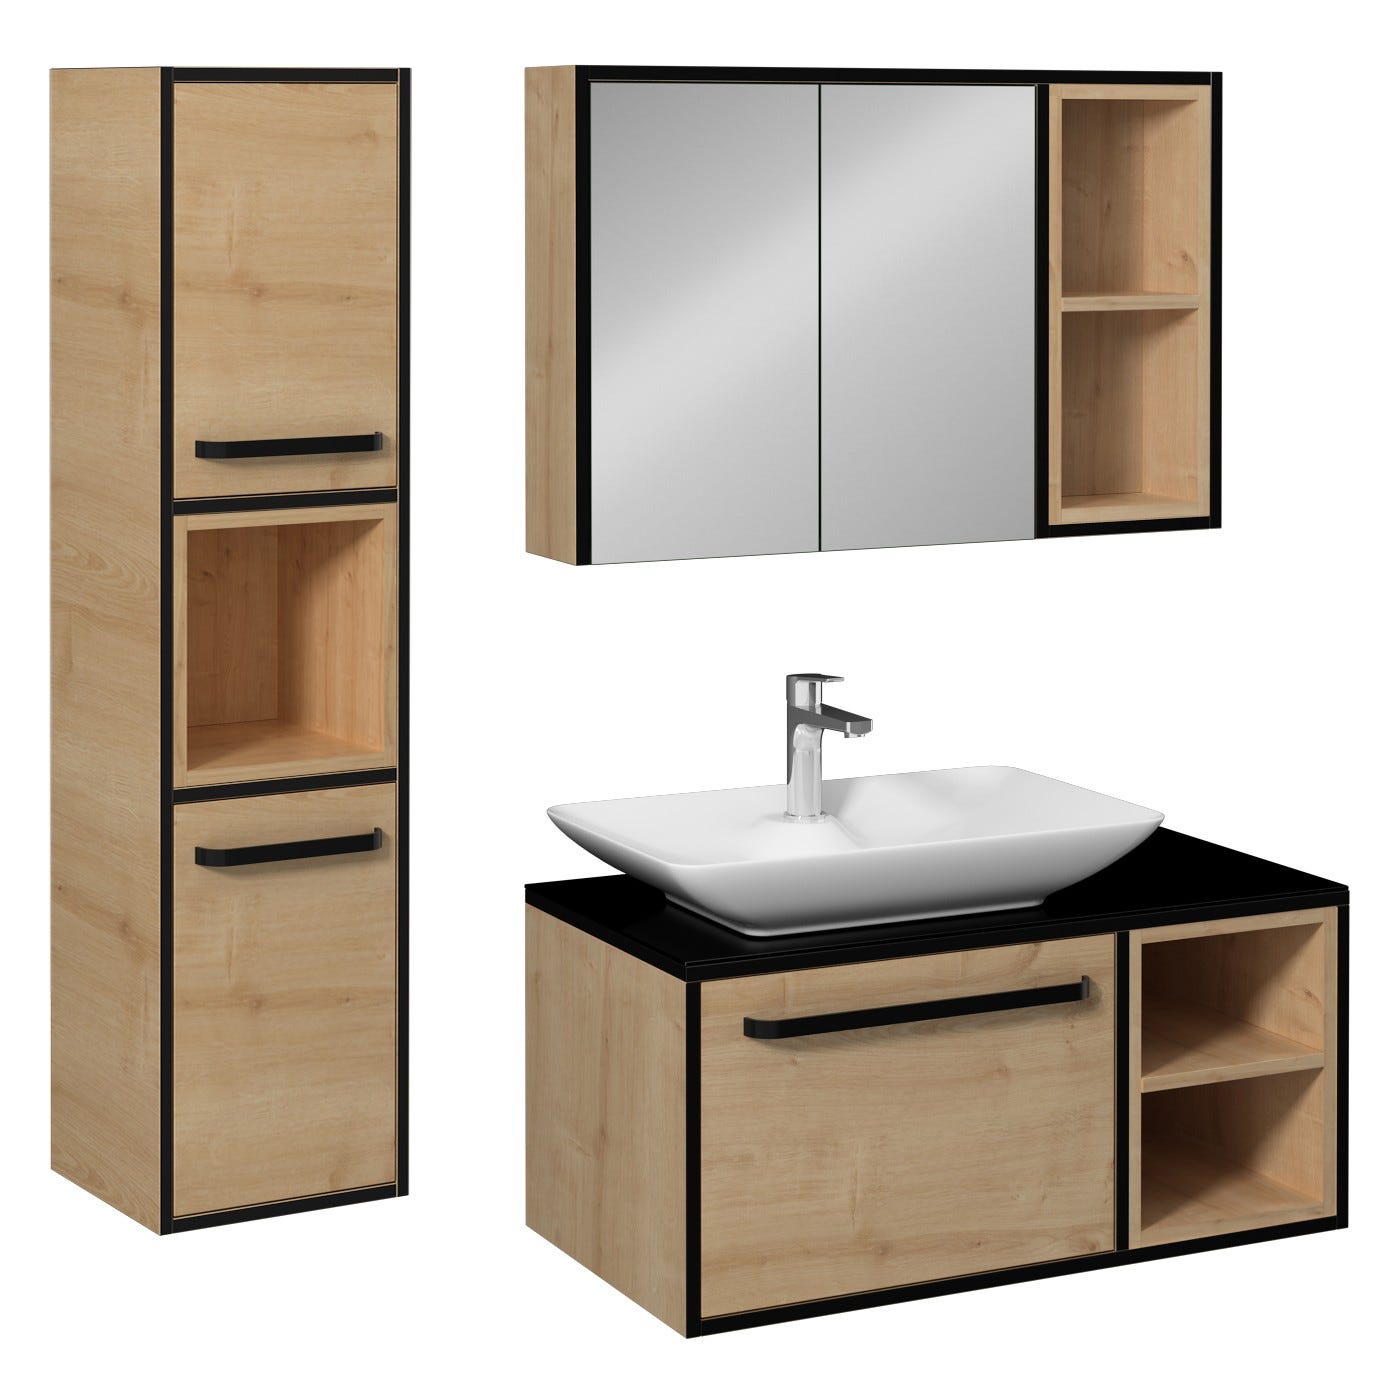 CAVALLI-VP Meuble salle de bain 90 cm coloris Chêne et vasque à poser + miroir armoire + colonne murale (À GAUCHE) 0